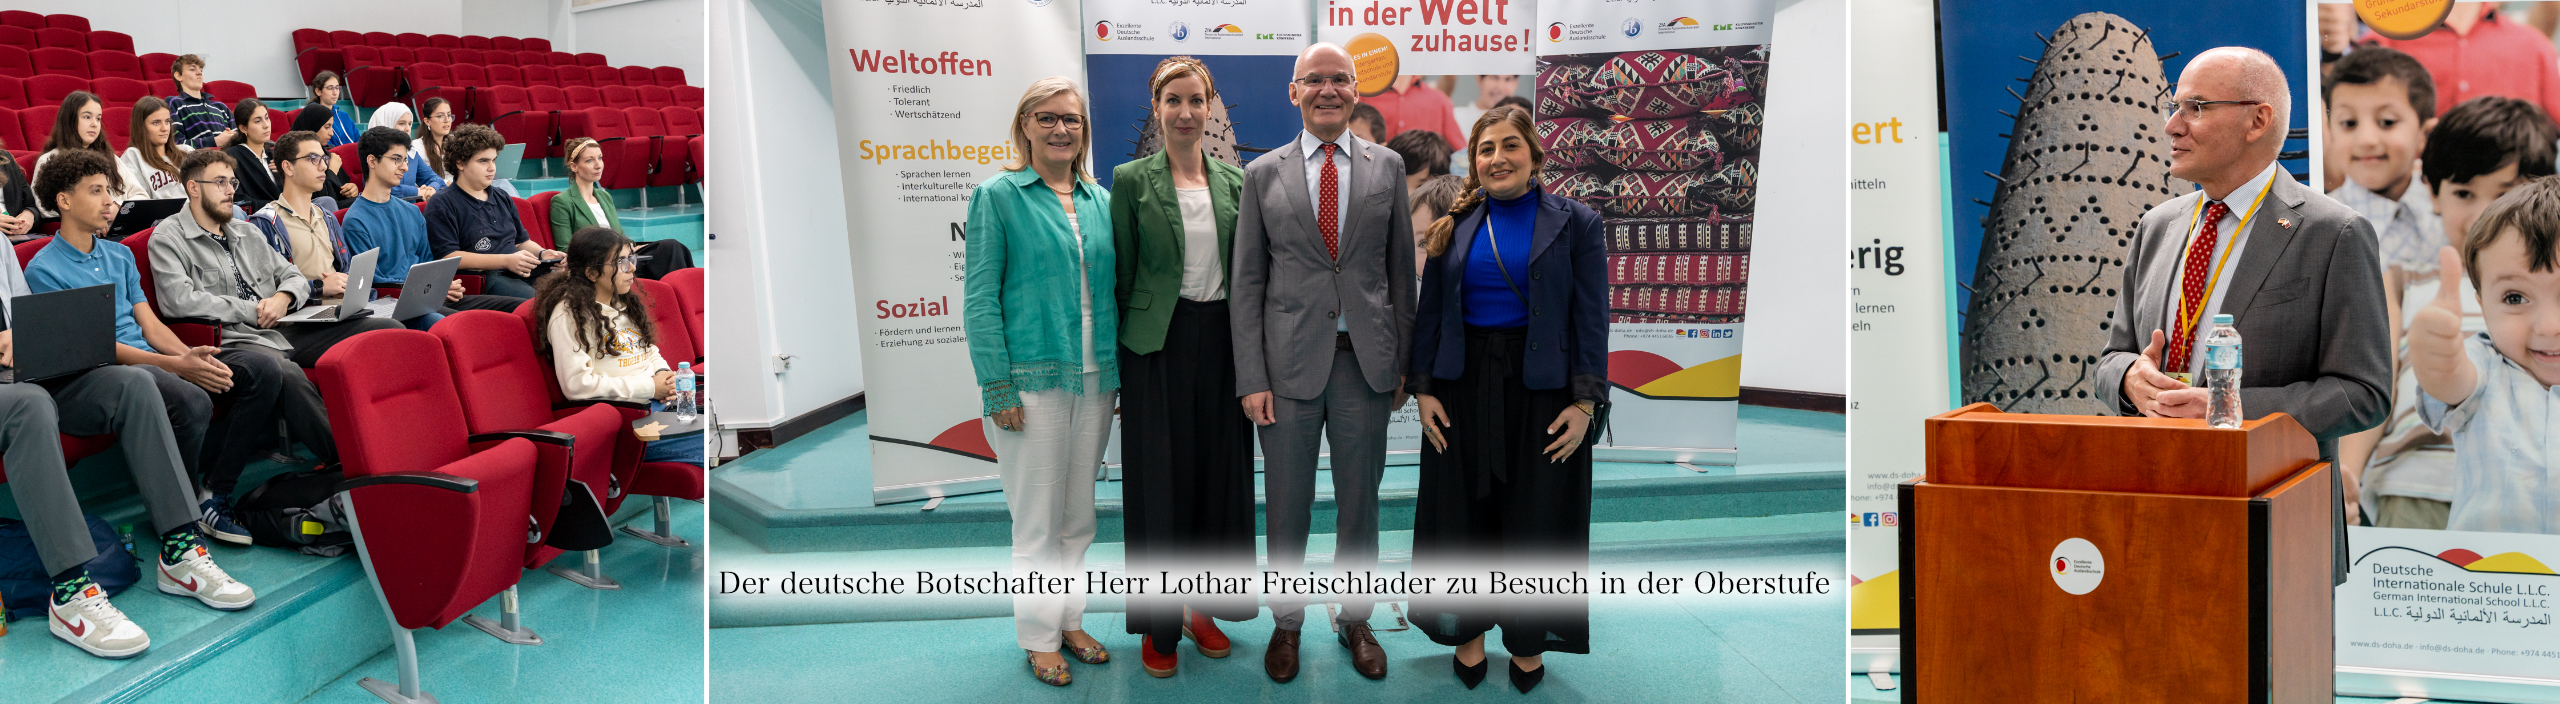 Der deutsche Botschafter Herr Lothar Freischlader zu Besuch in der Oberstufe